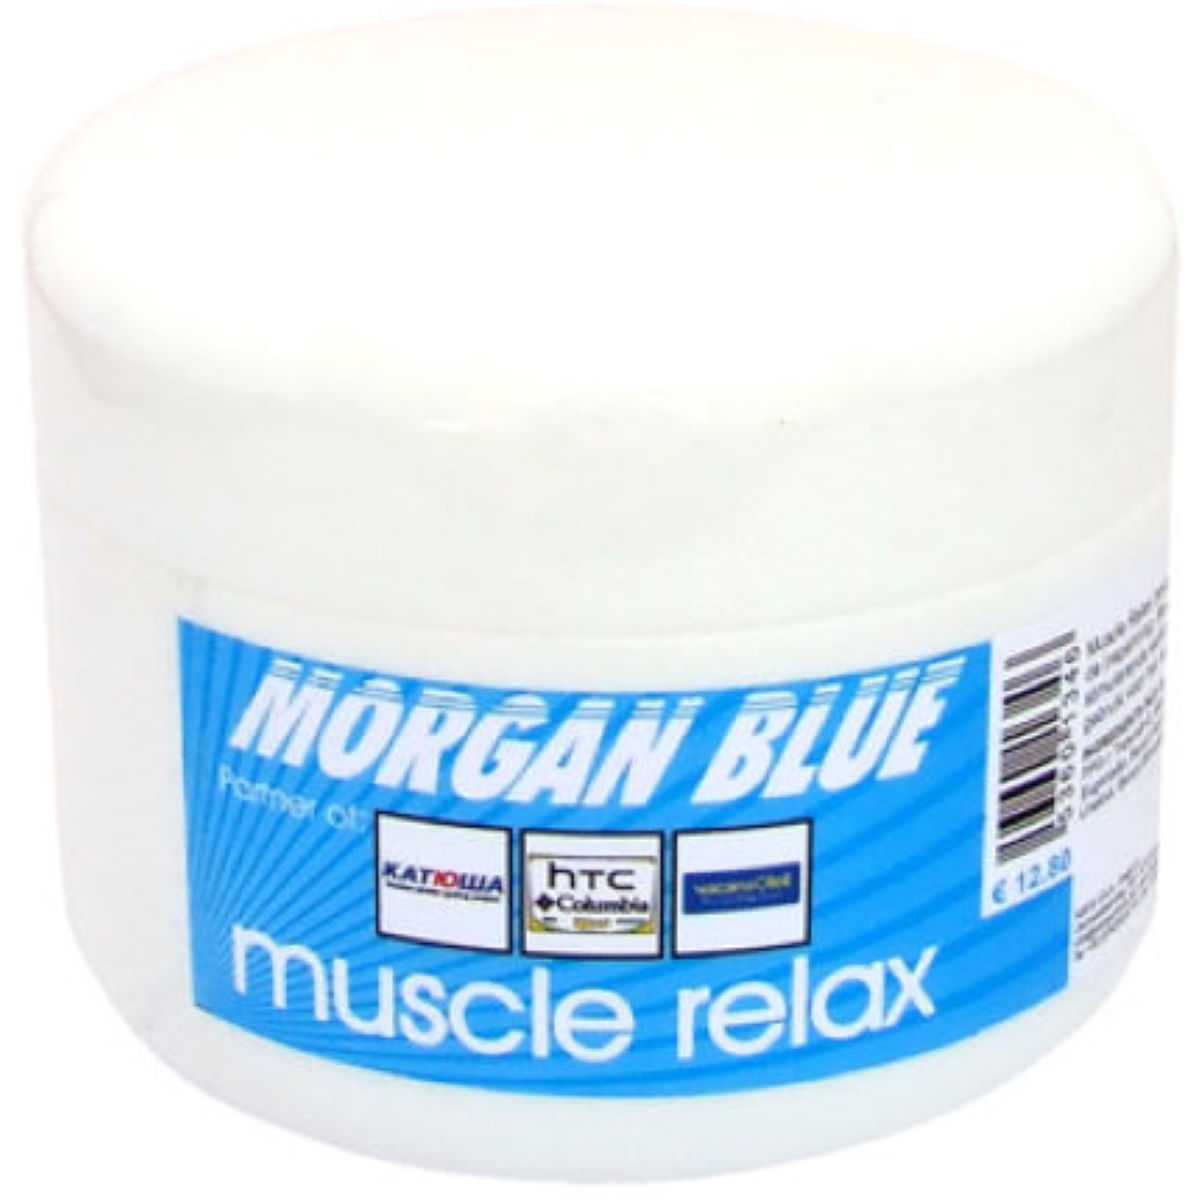 Crema para la recuperación muscular Morgan Blue Muscle Relax (200 ml) - Lociones musculares